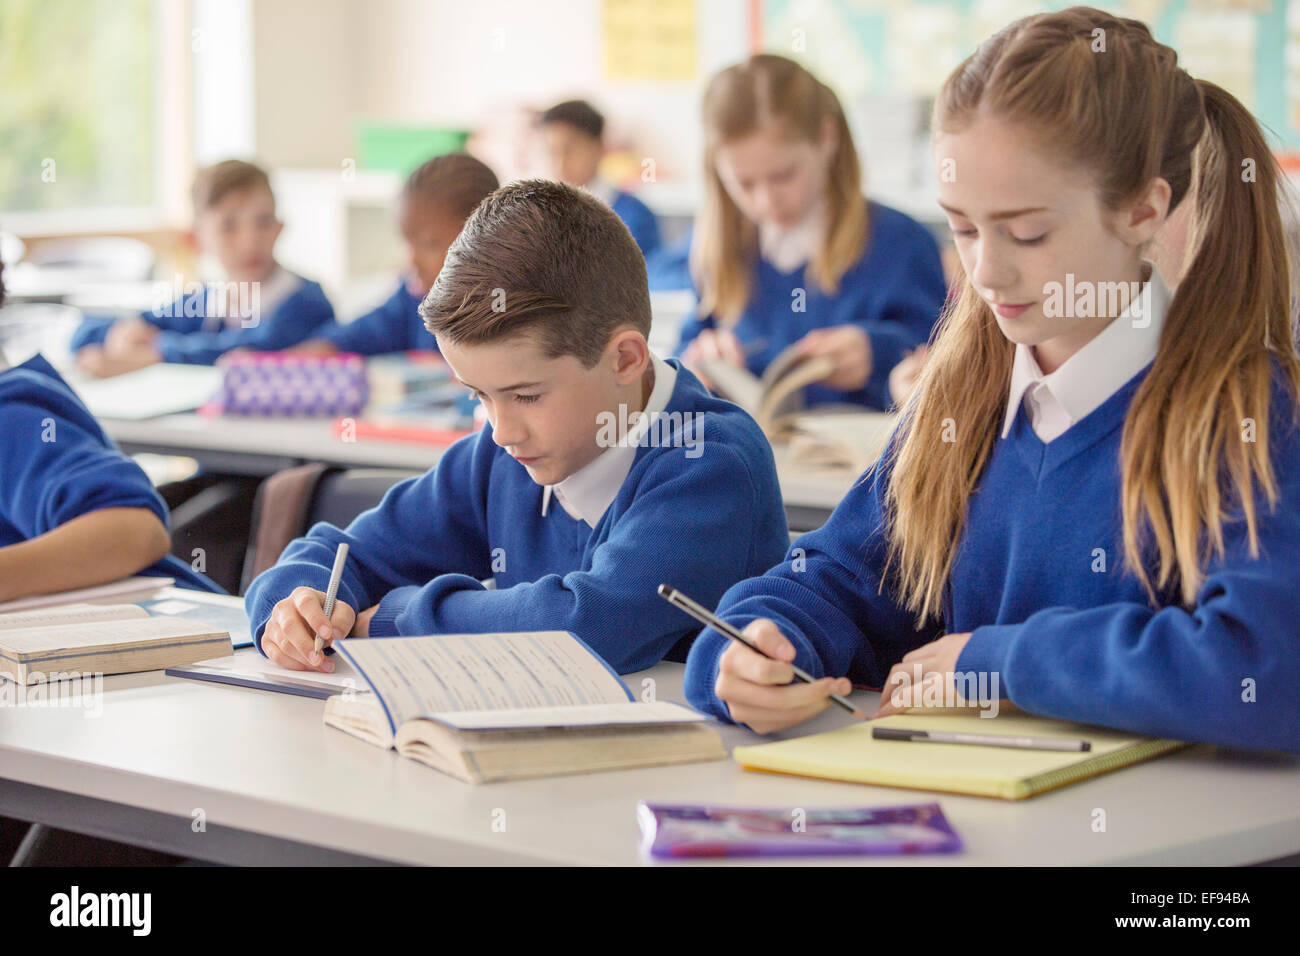 Les enfants de l'école élémentaire working at desk in classroom durant la leçon Banque D'Images